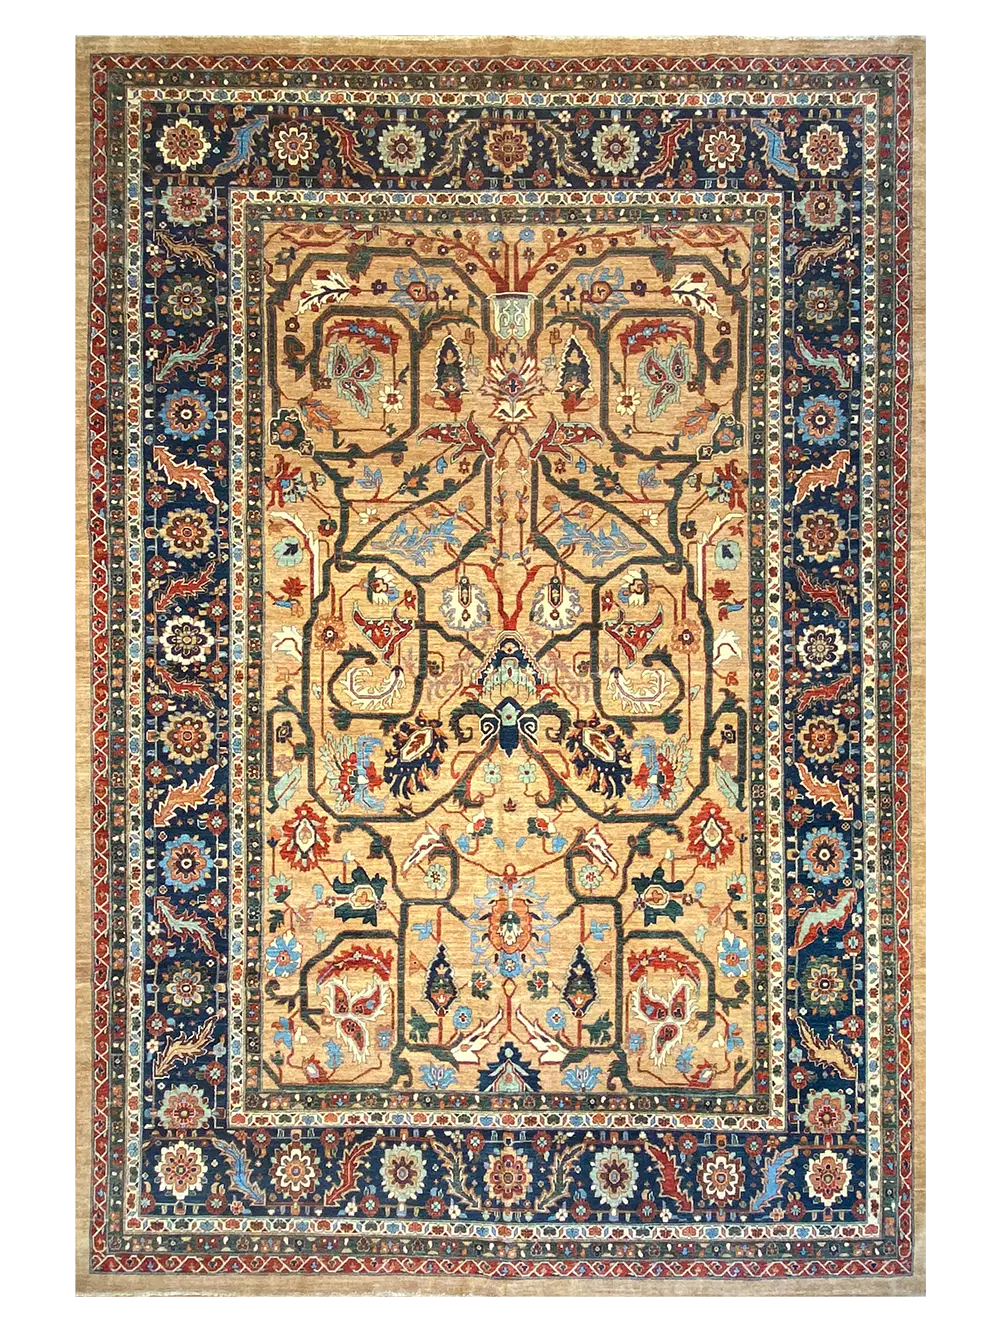 Ghashghaei 10' 1" x 14' 6" Handmade Area Rug